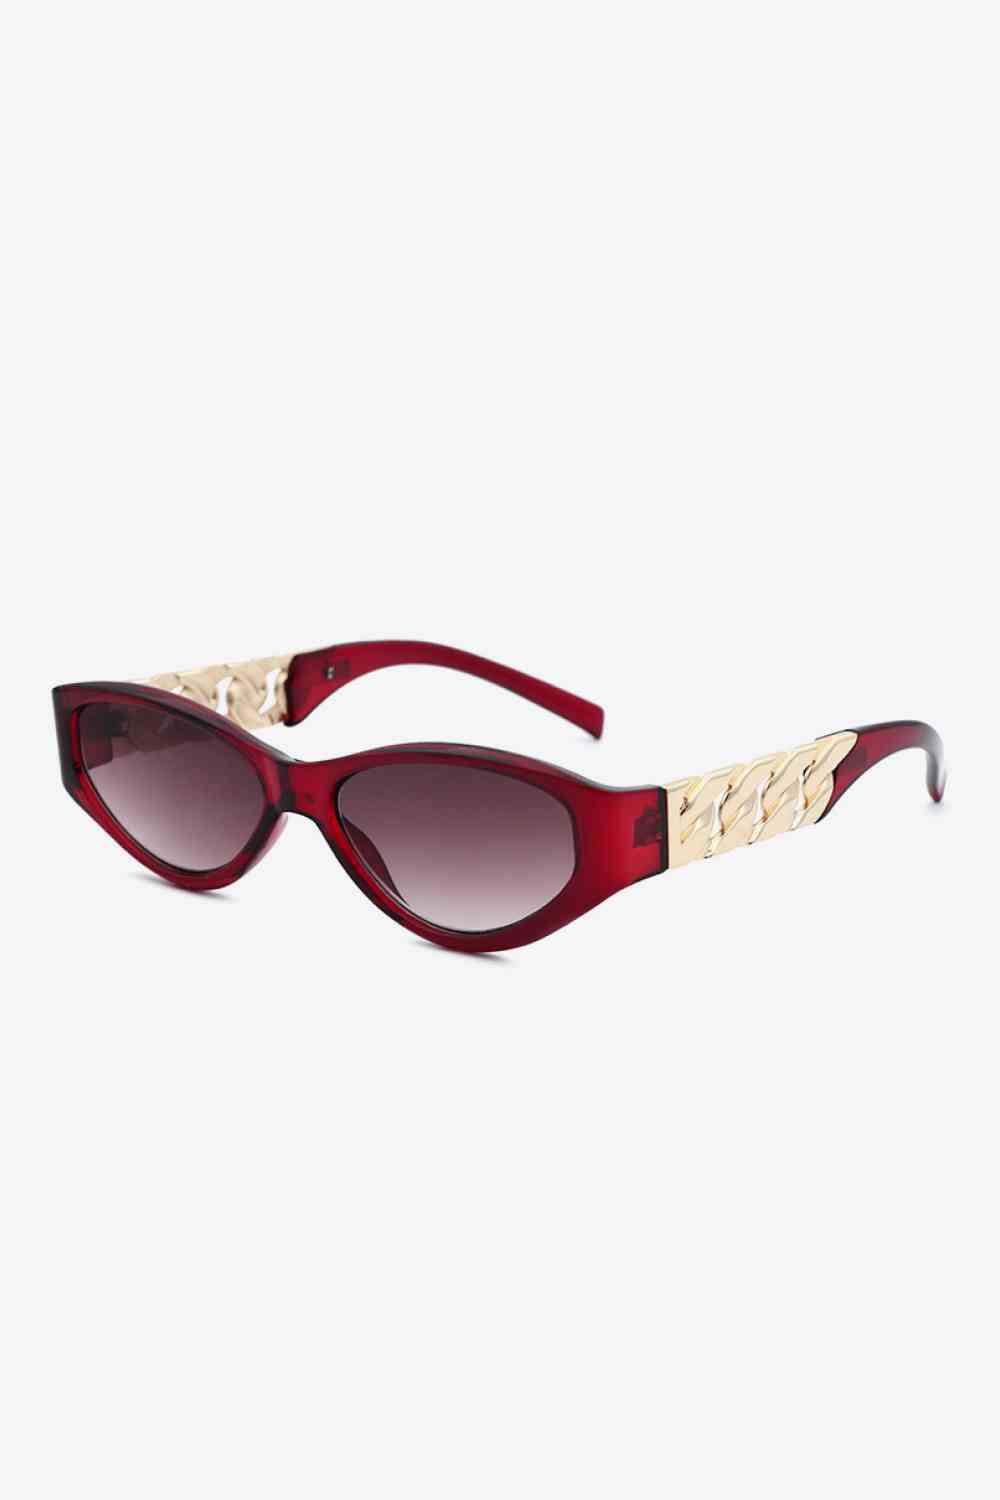 TEEK - Flat Side Chain Temple Cat Eye Sunglasses EYEGLASSES TEEK Trend Deep Red  